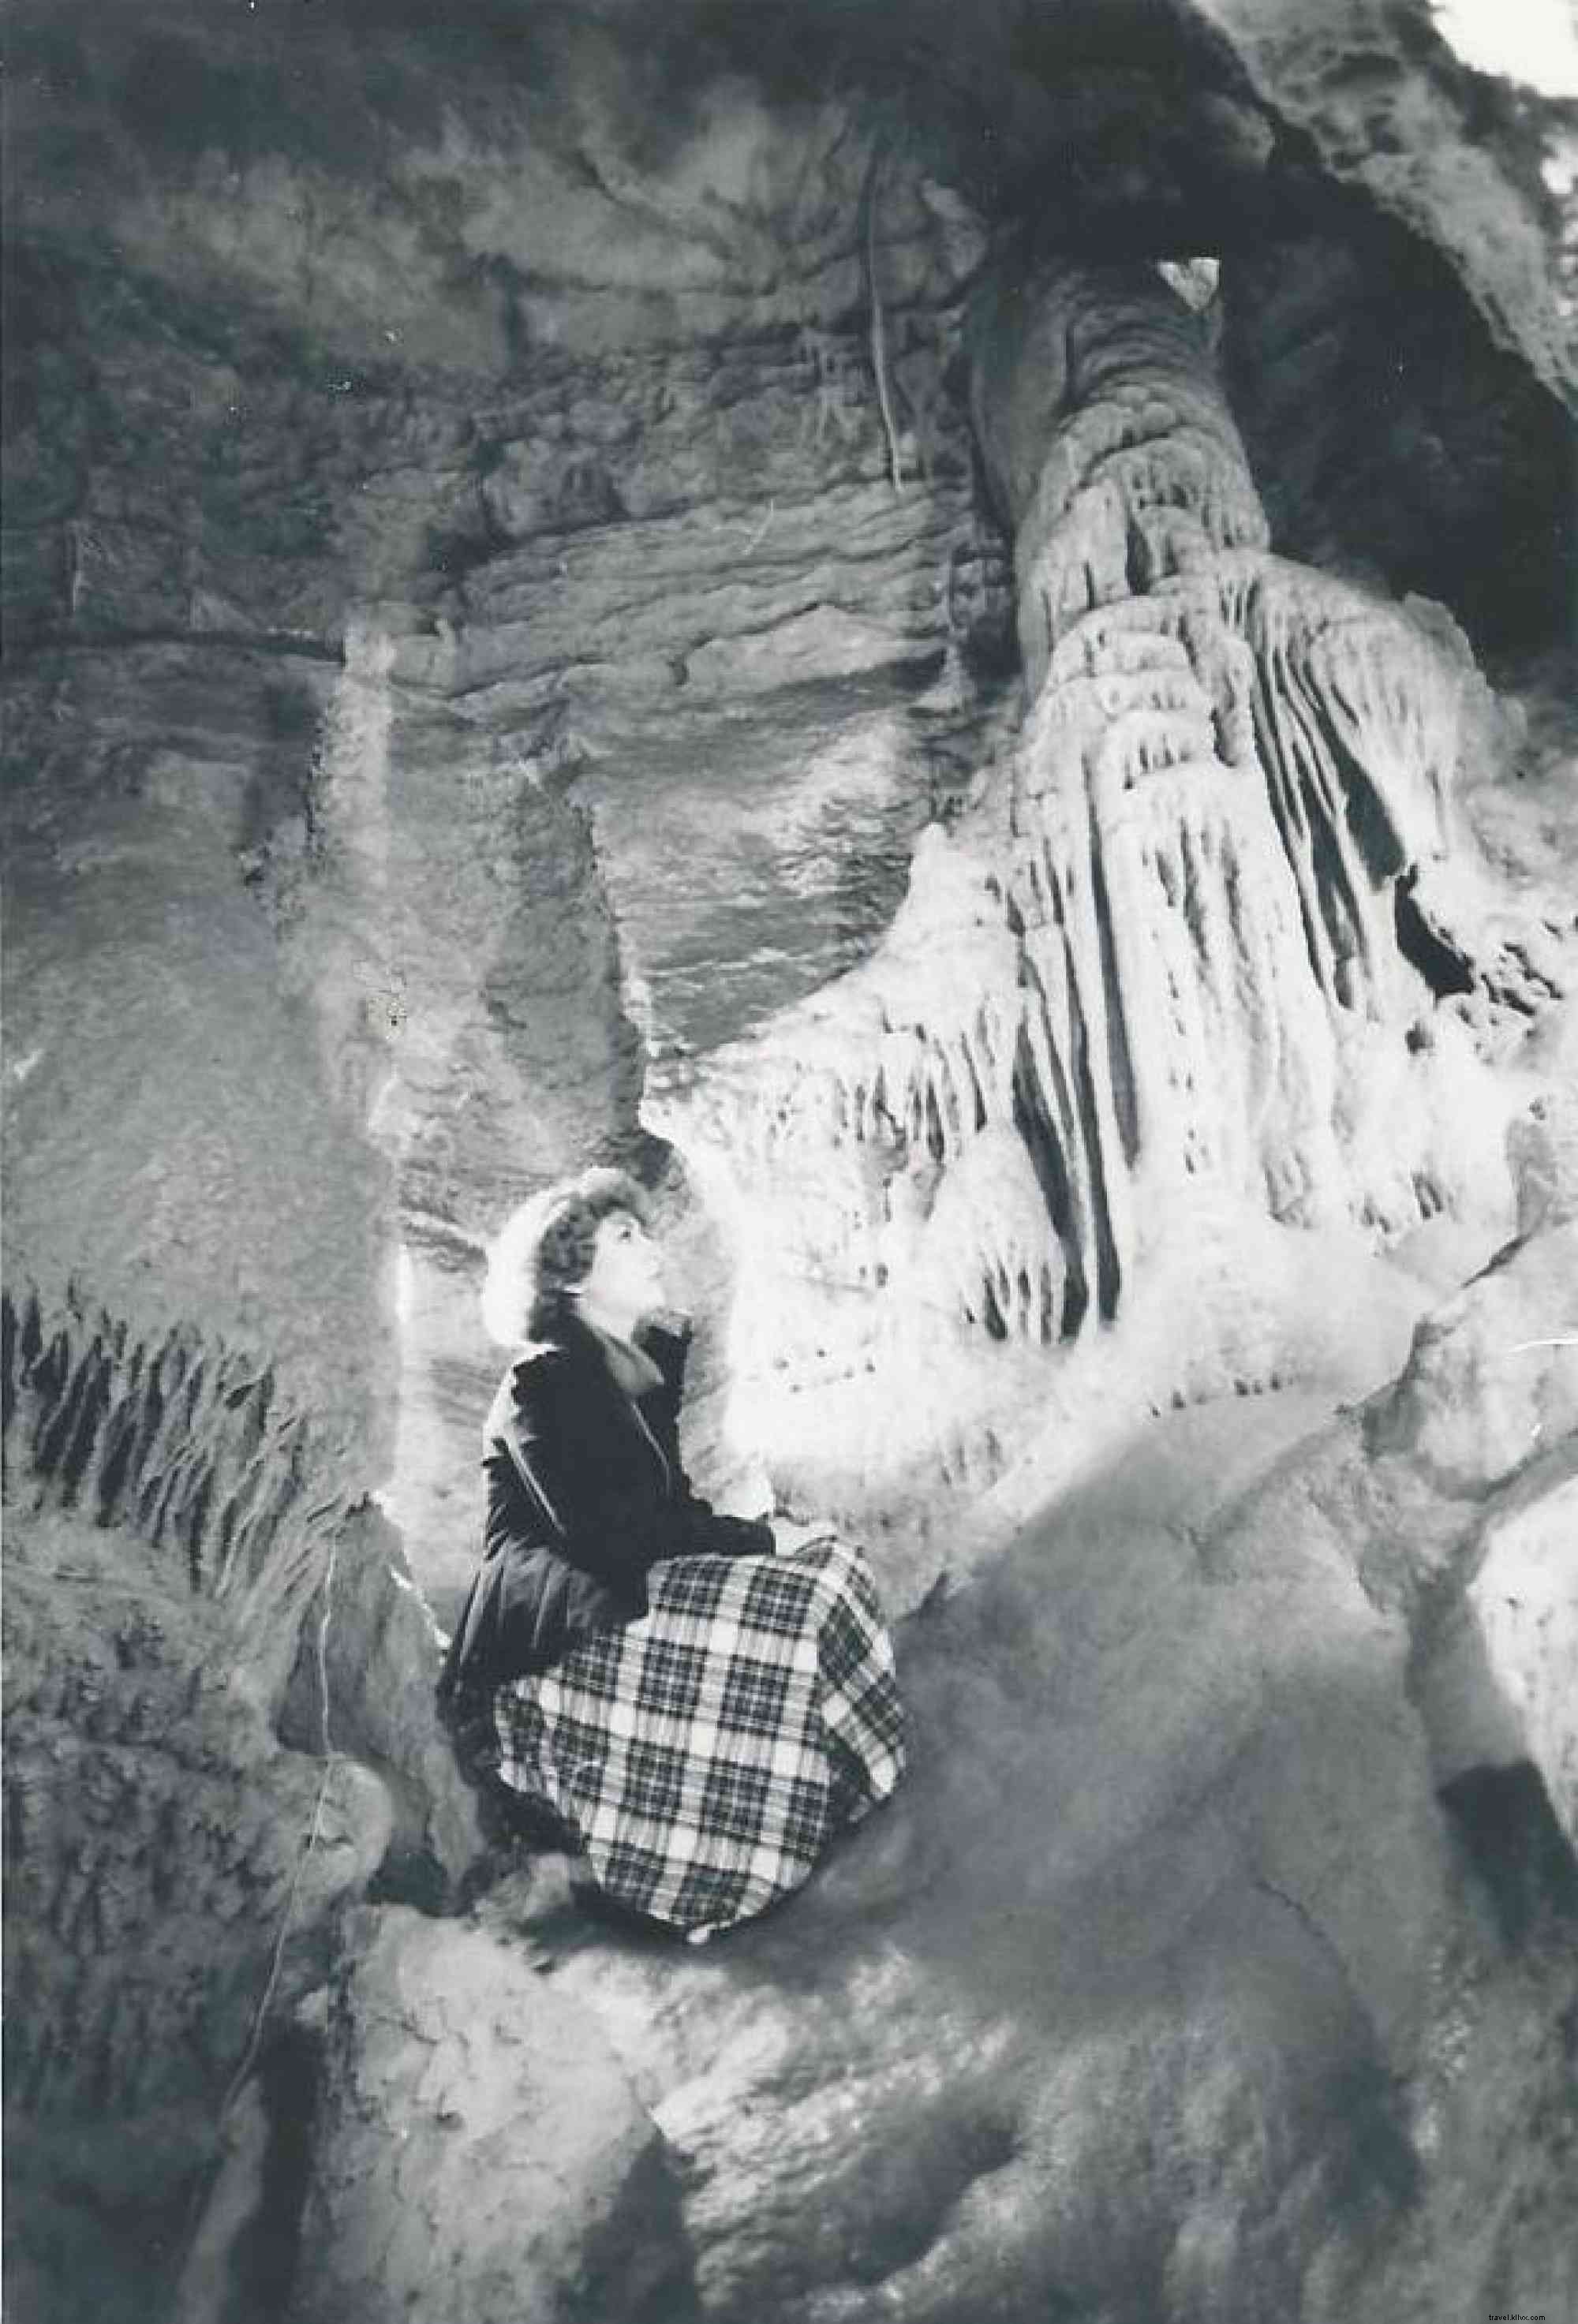 incoln Caverns célèbre 90 ans de découverte 